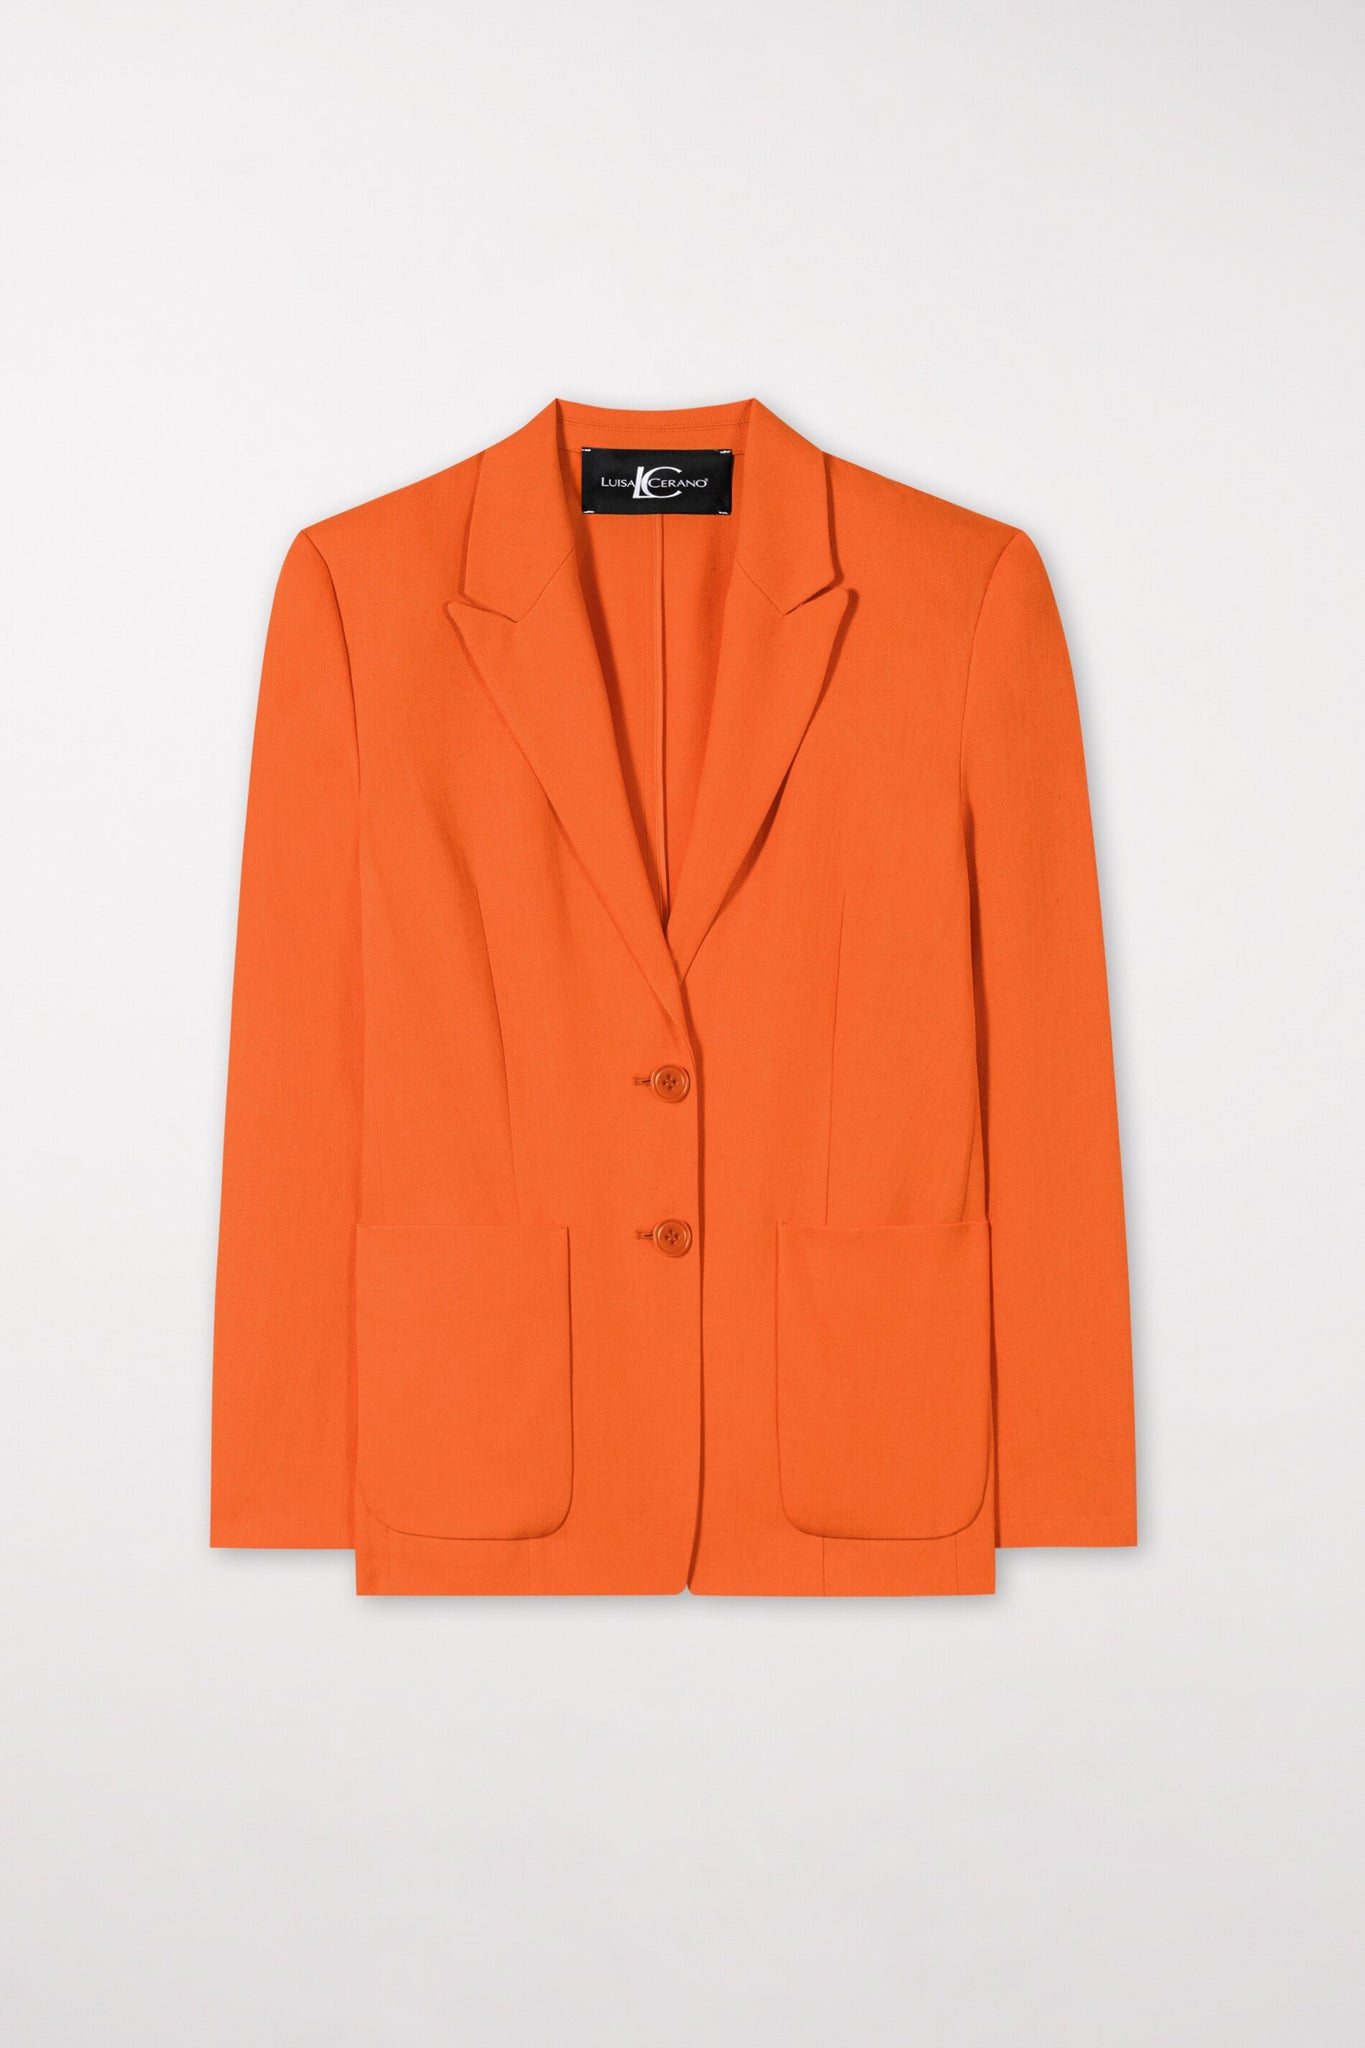 Luisa Cerano - Orange Linen Blend Blazer 498017-3503